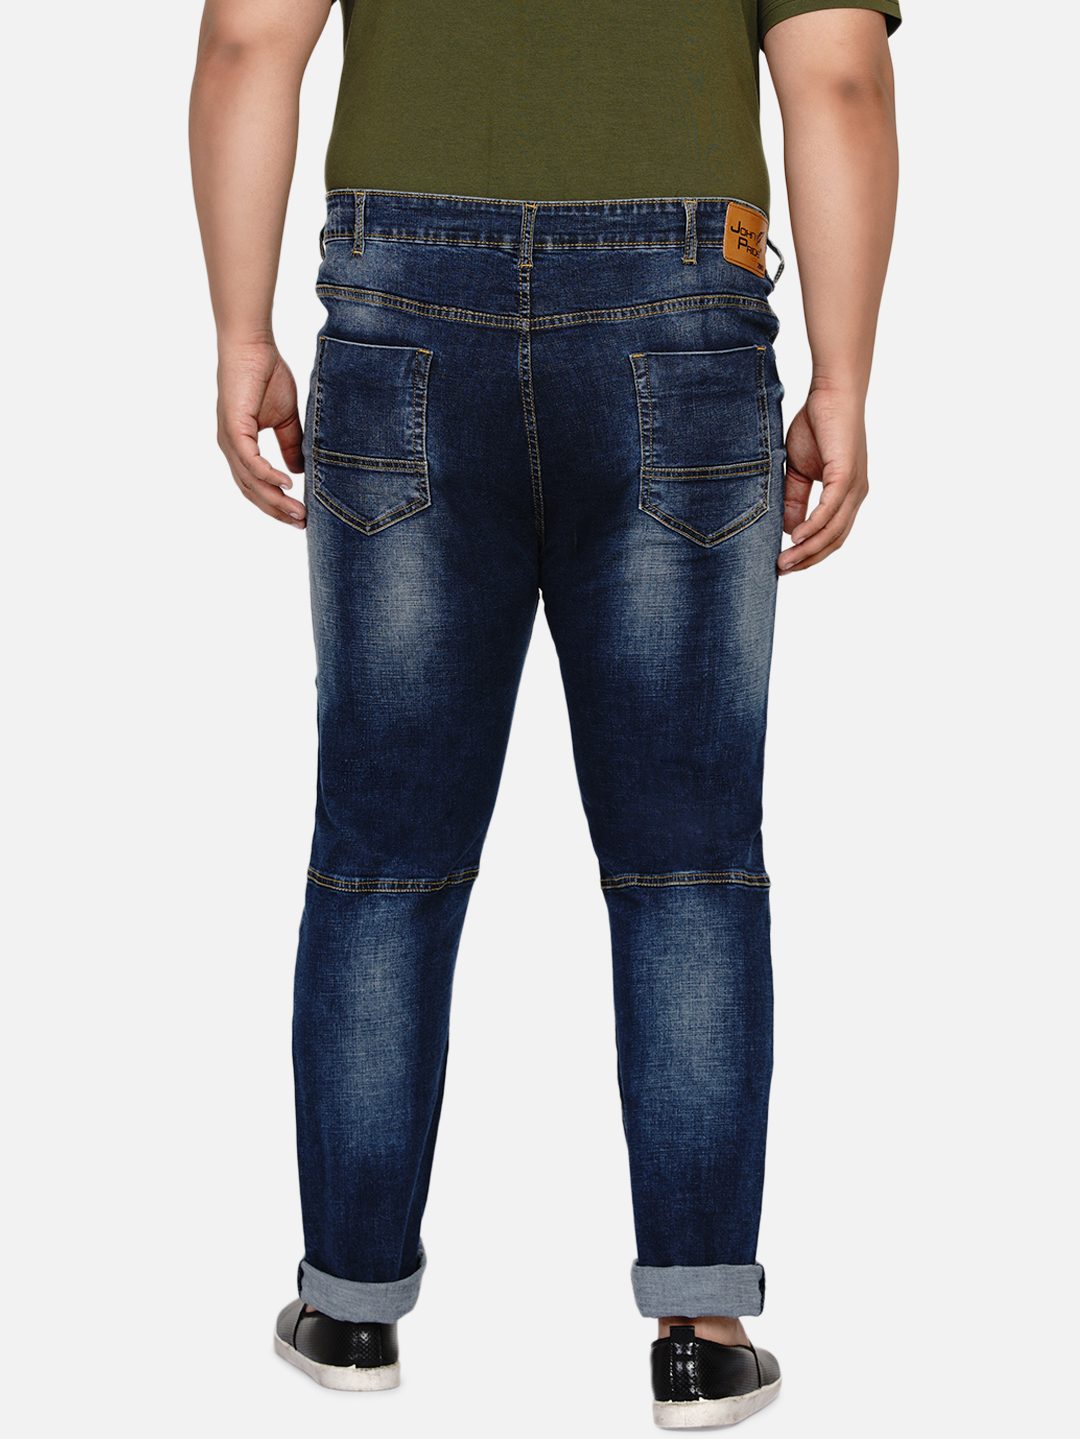 bottomwear/jeans/JPJ12186/jpj12186-5.jpg